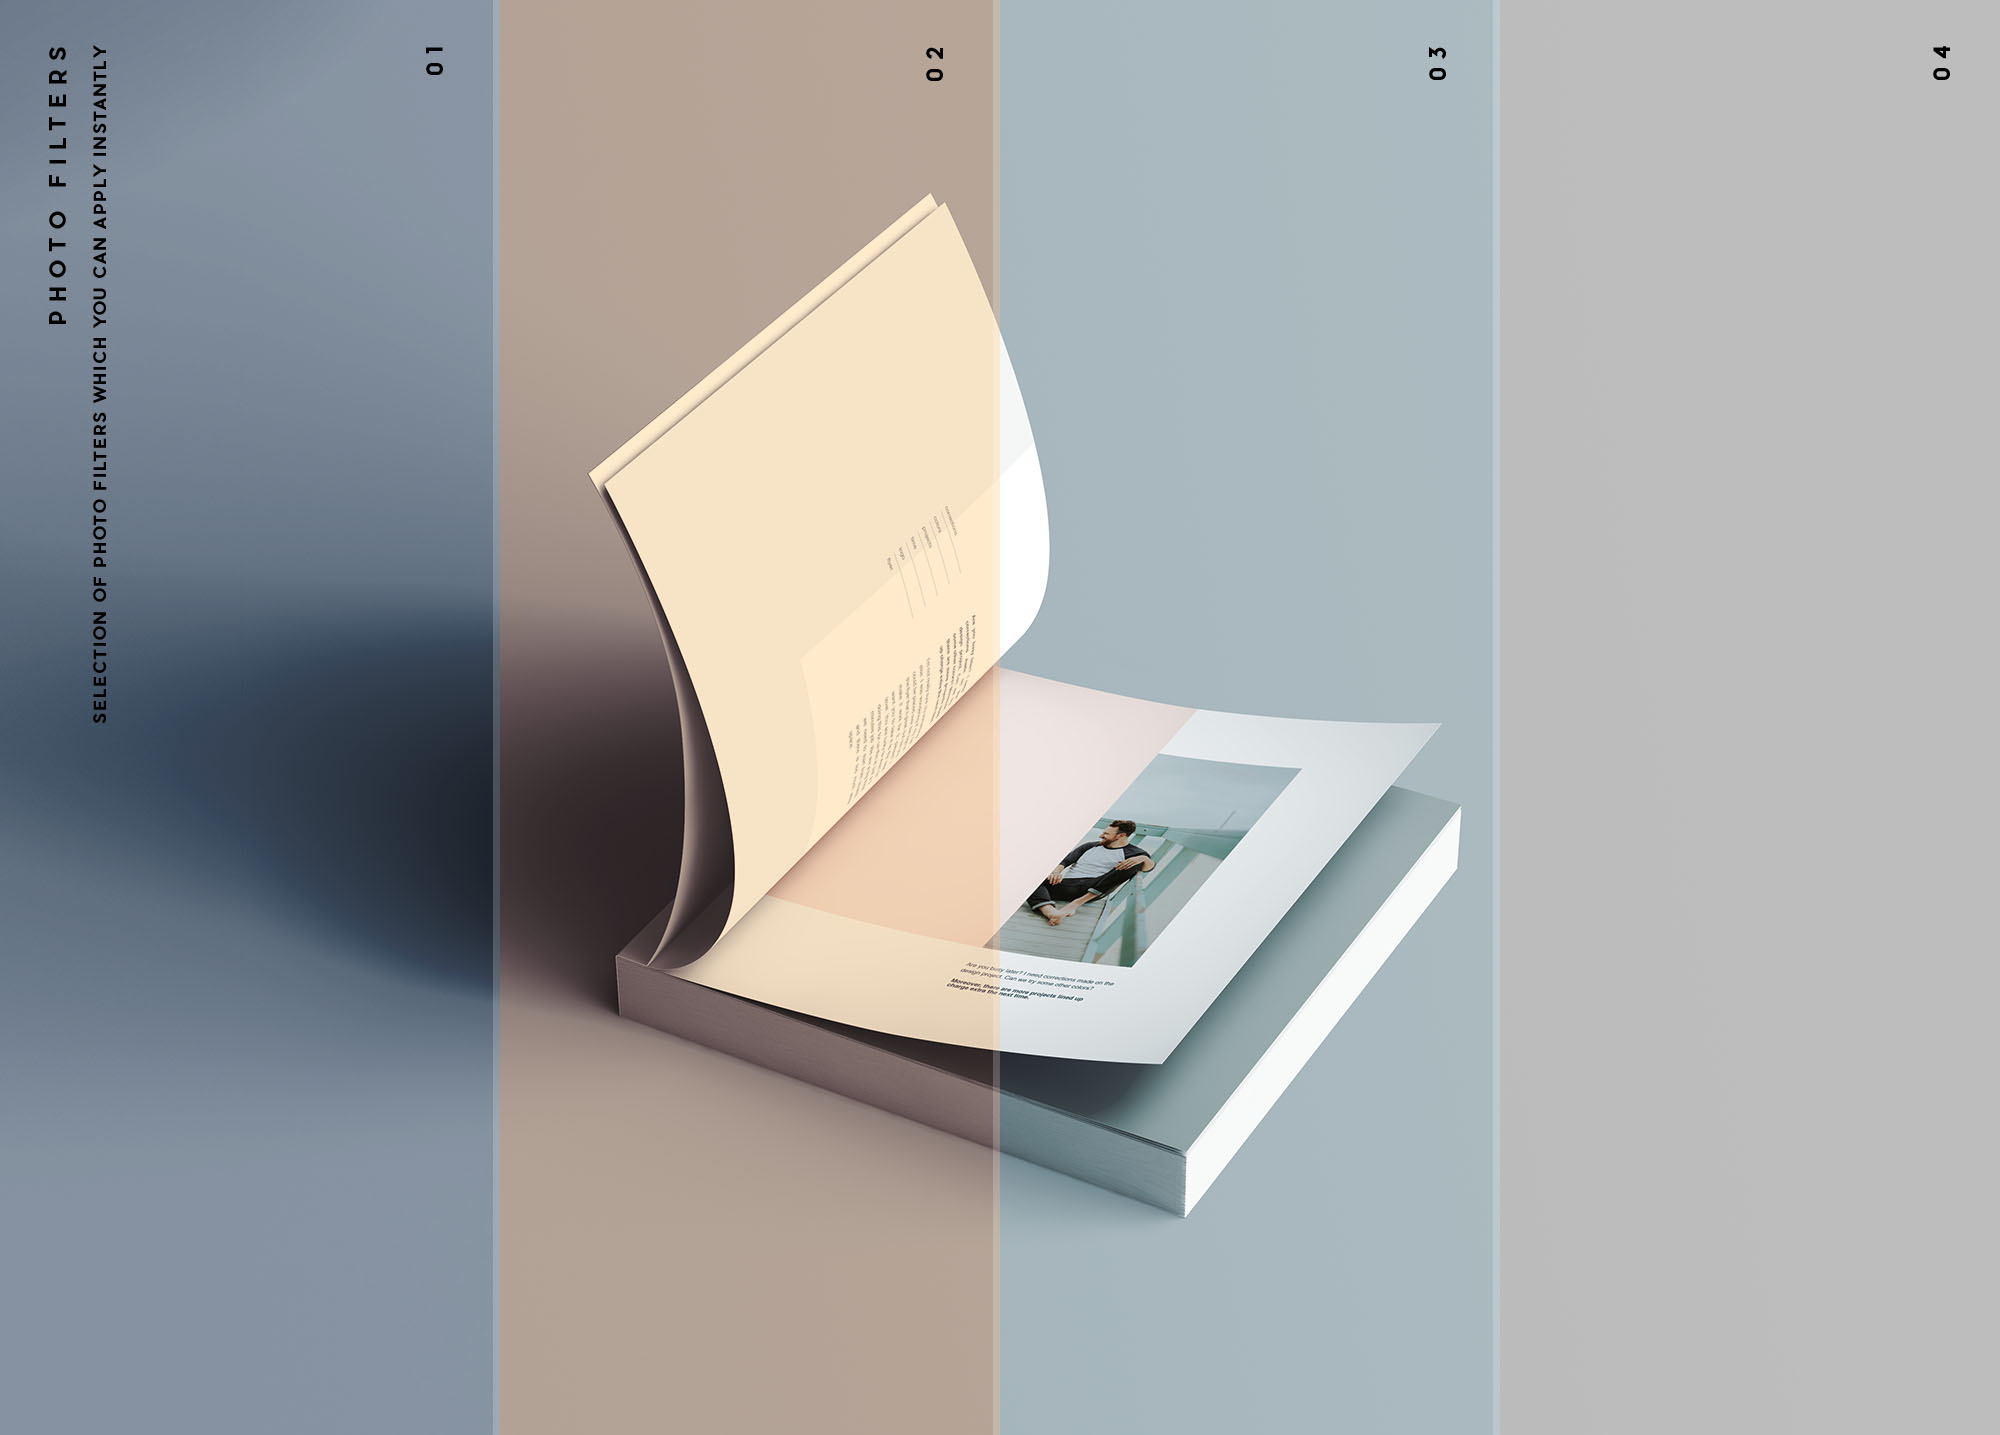 方形软封图书内页版式设计效果图样机非凡图库精选 Square Softcover Book Mockup插图(10)